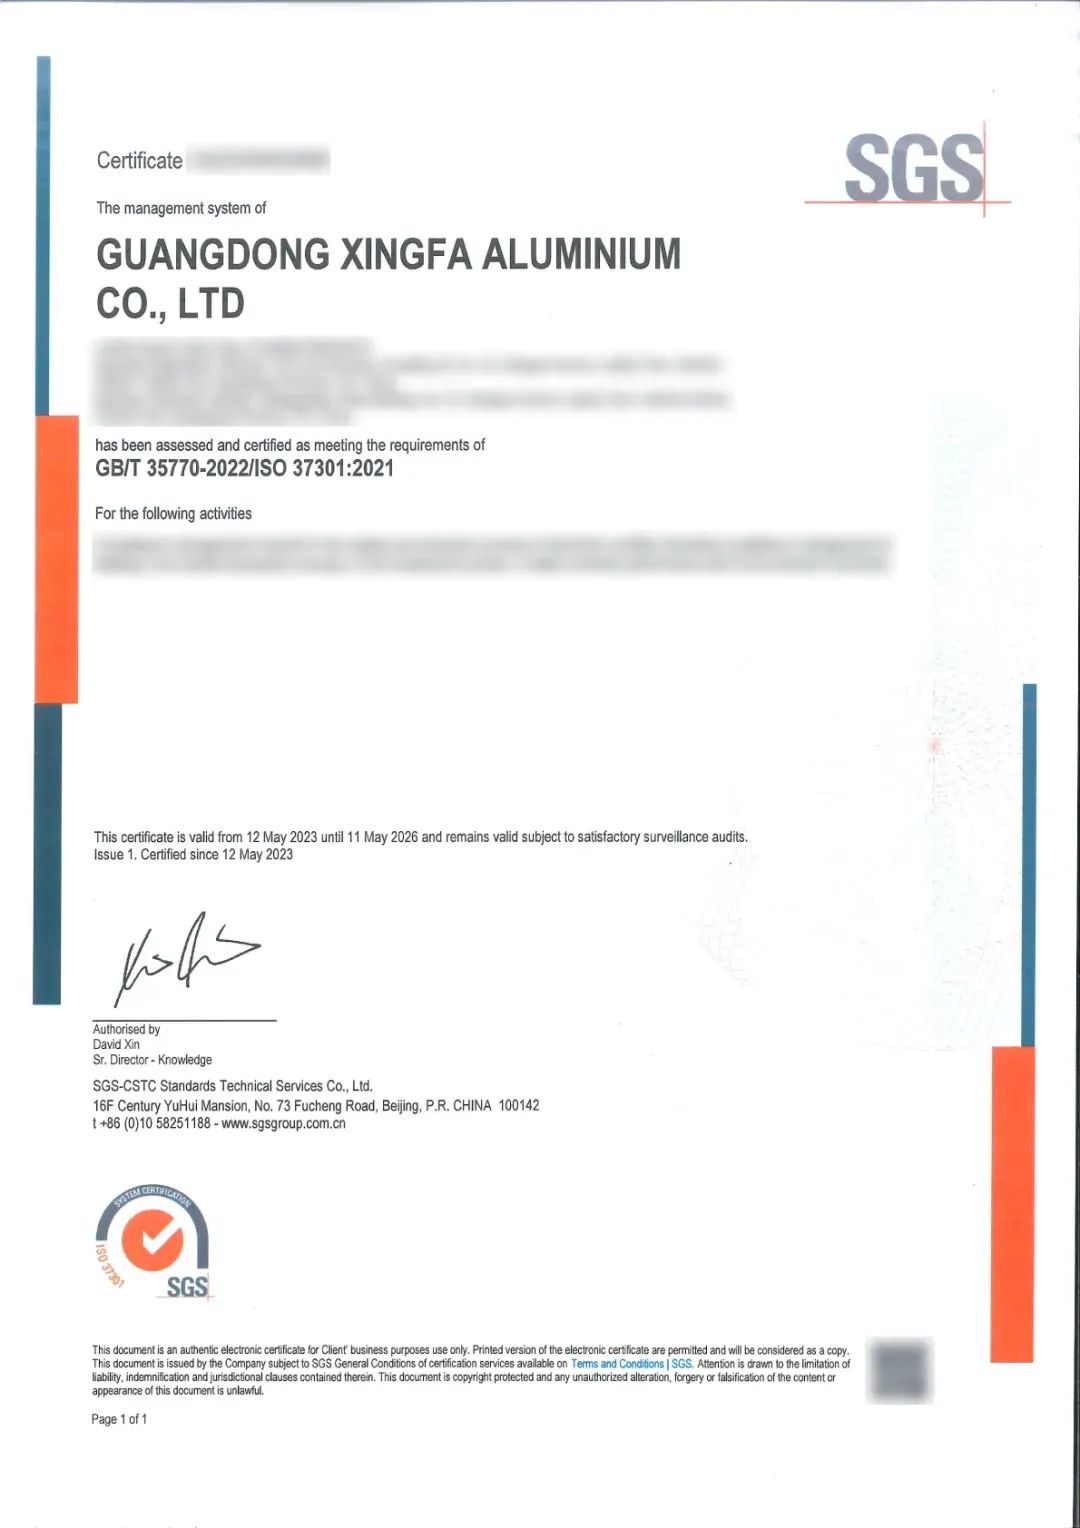 兴发铝业获得行业首家合规管理体系认证证书